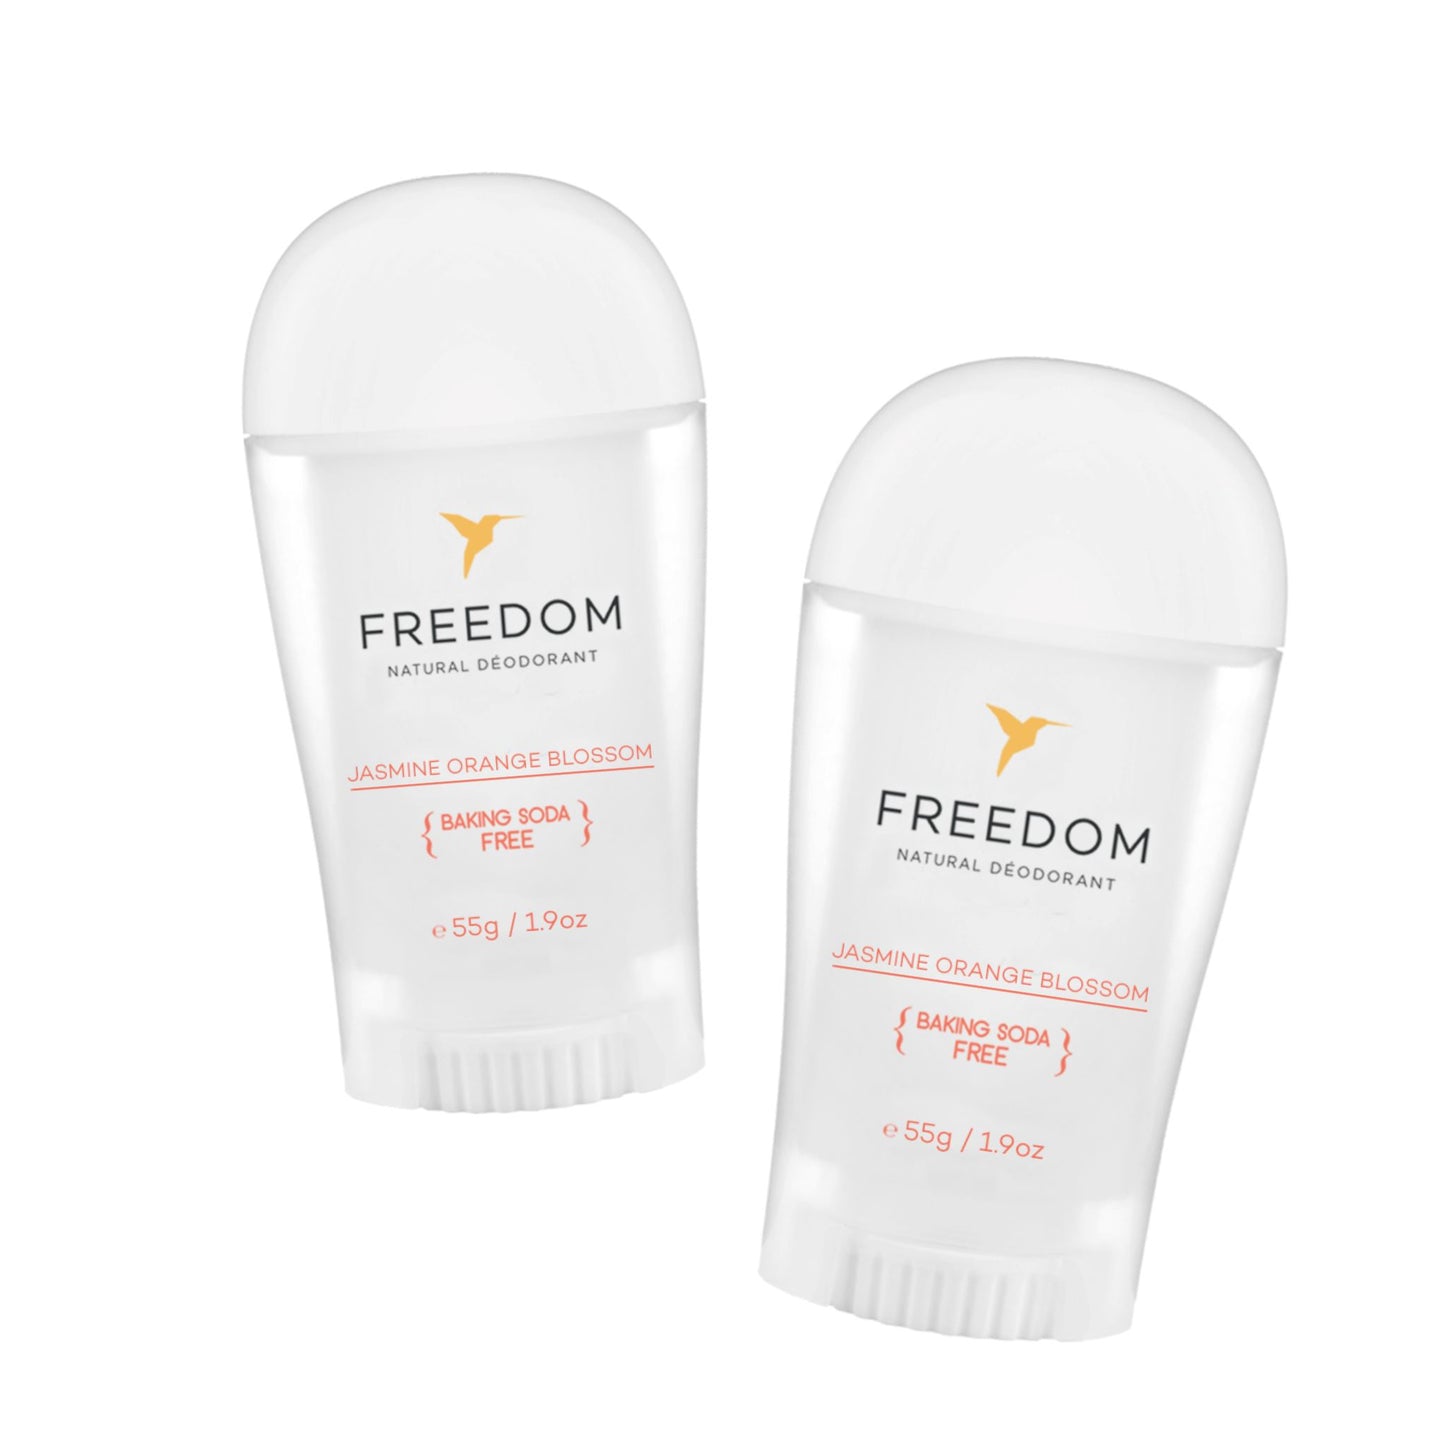 All Natural Deodorant - Original Sticks Deodorant Freedom Jasmine Blossom 2-Pack 